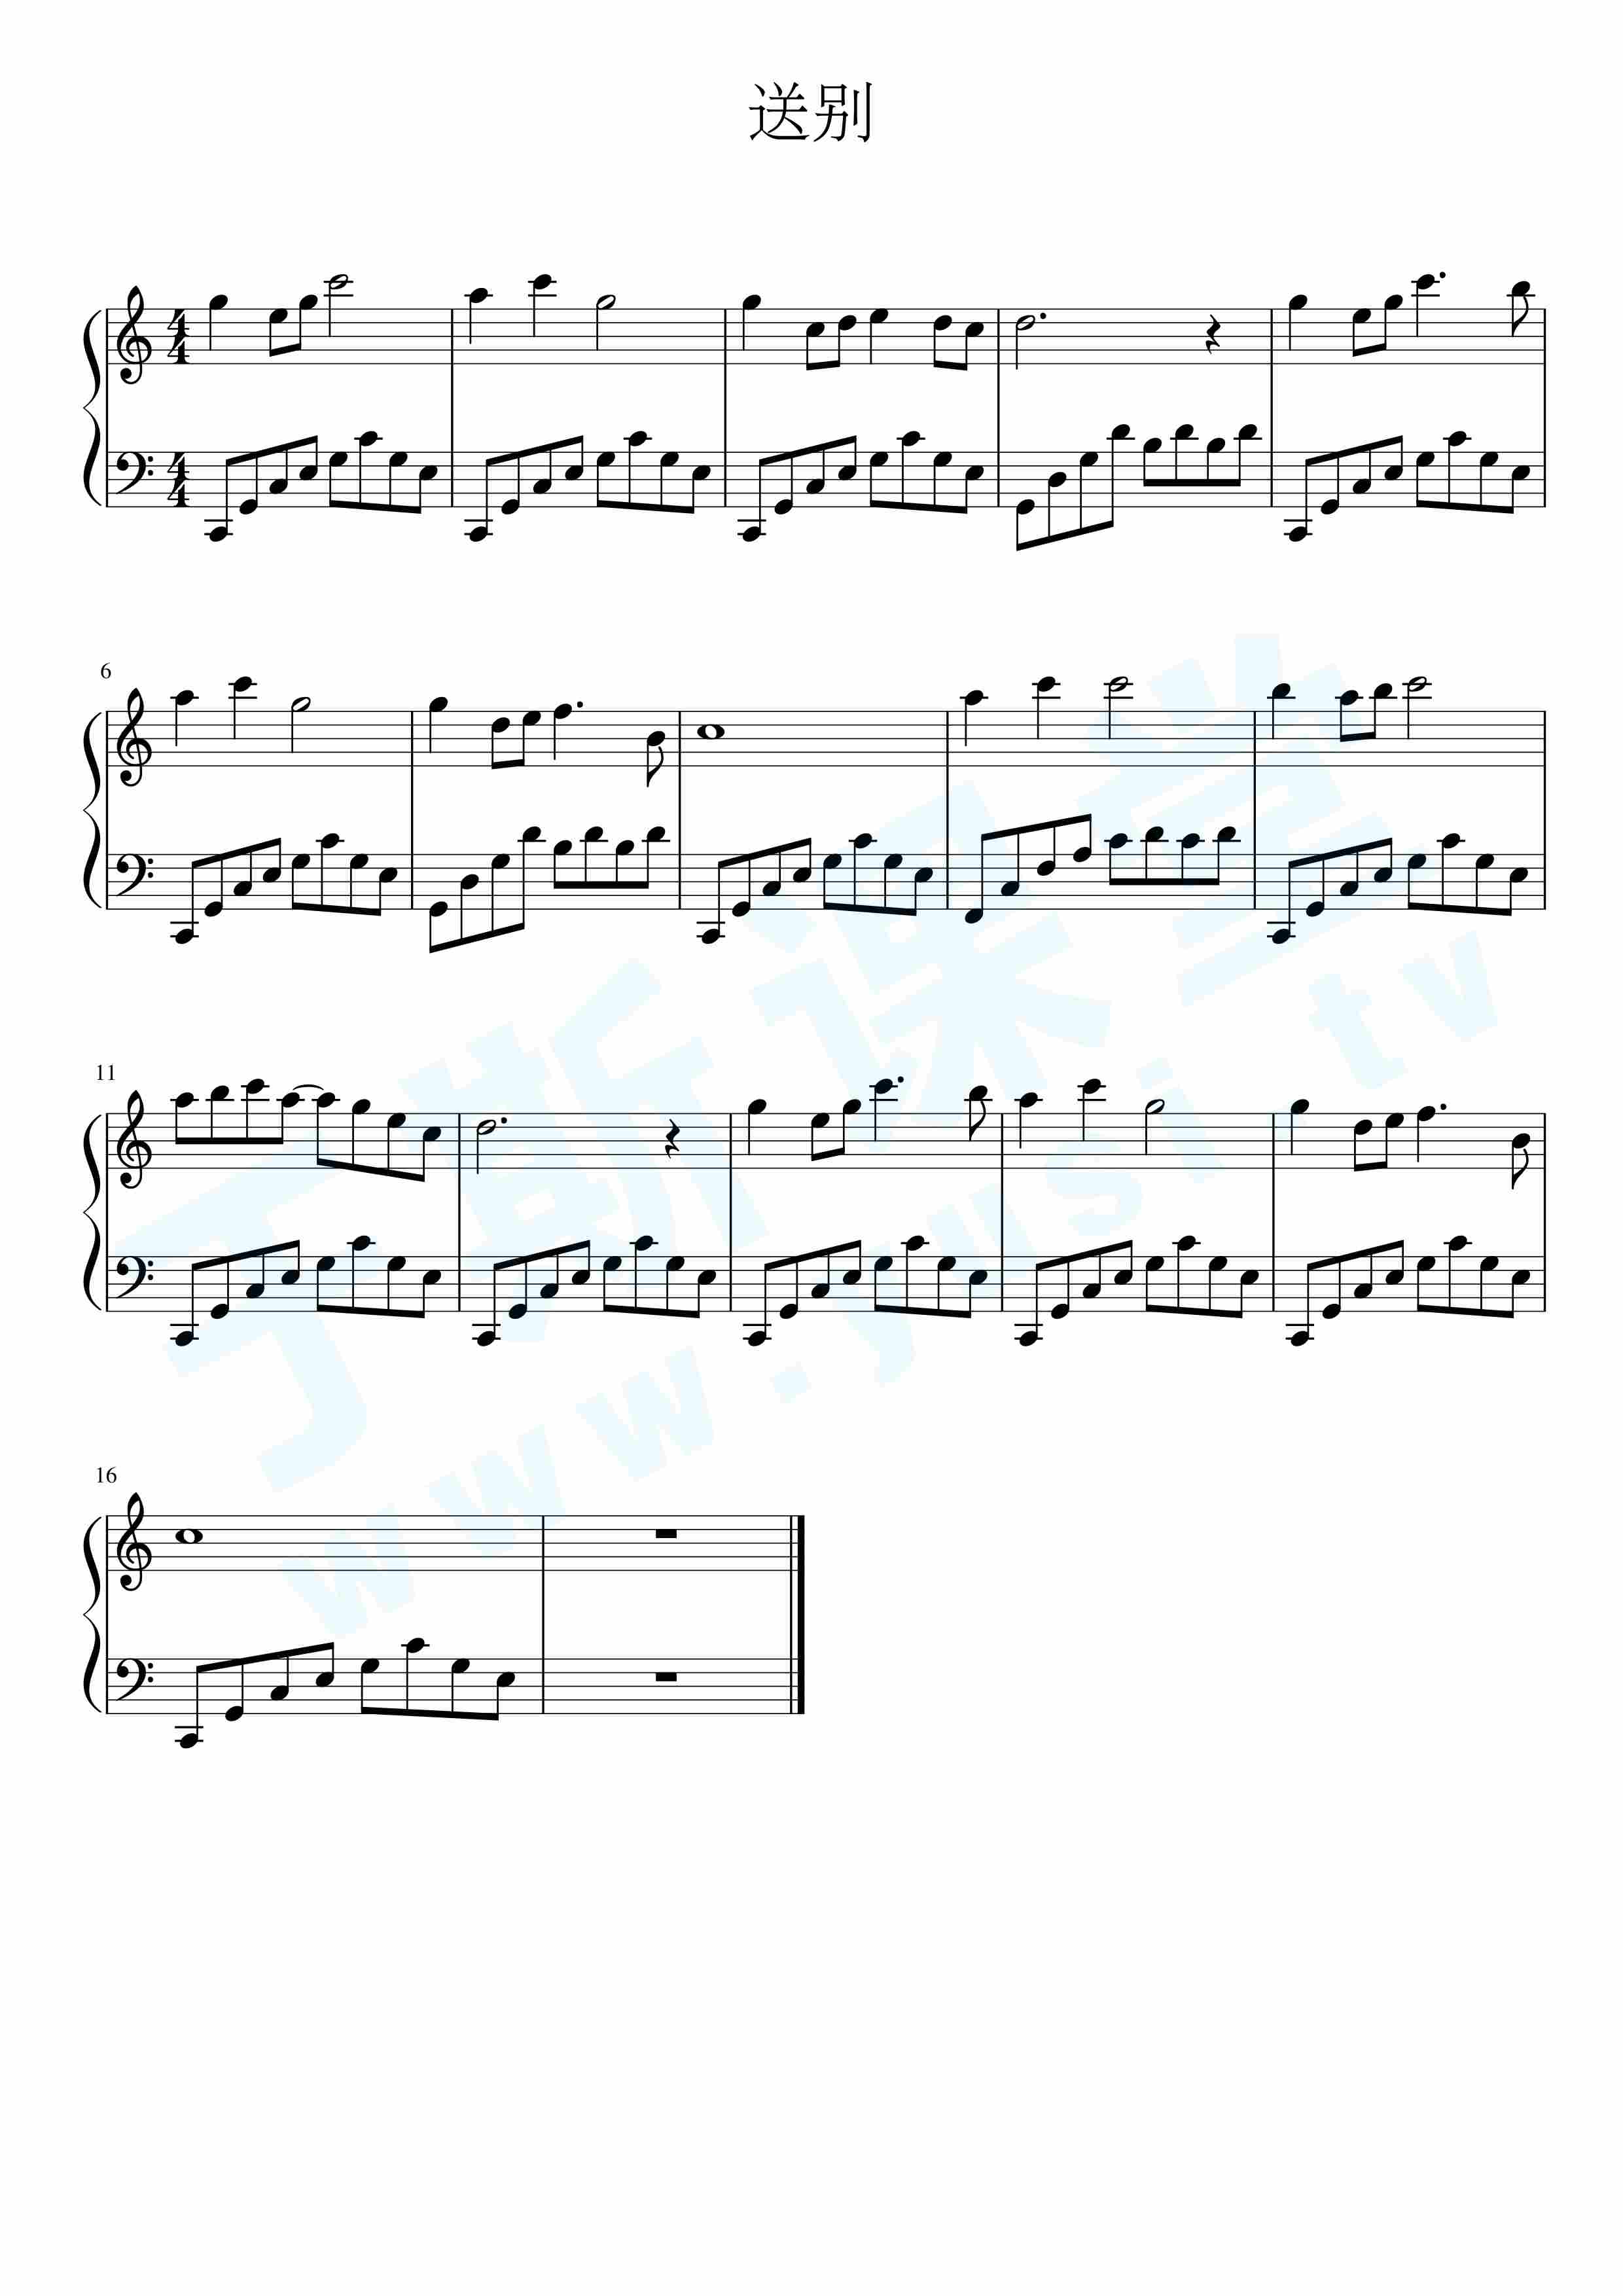 送别-fujita版钢琴曲谱,于斯课堂精心出品.